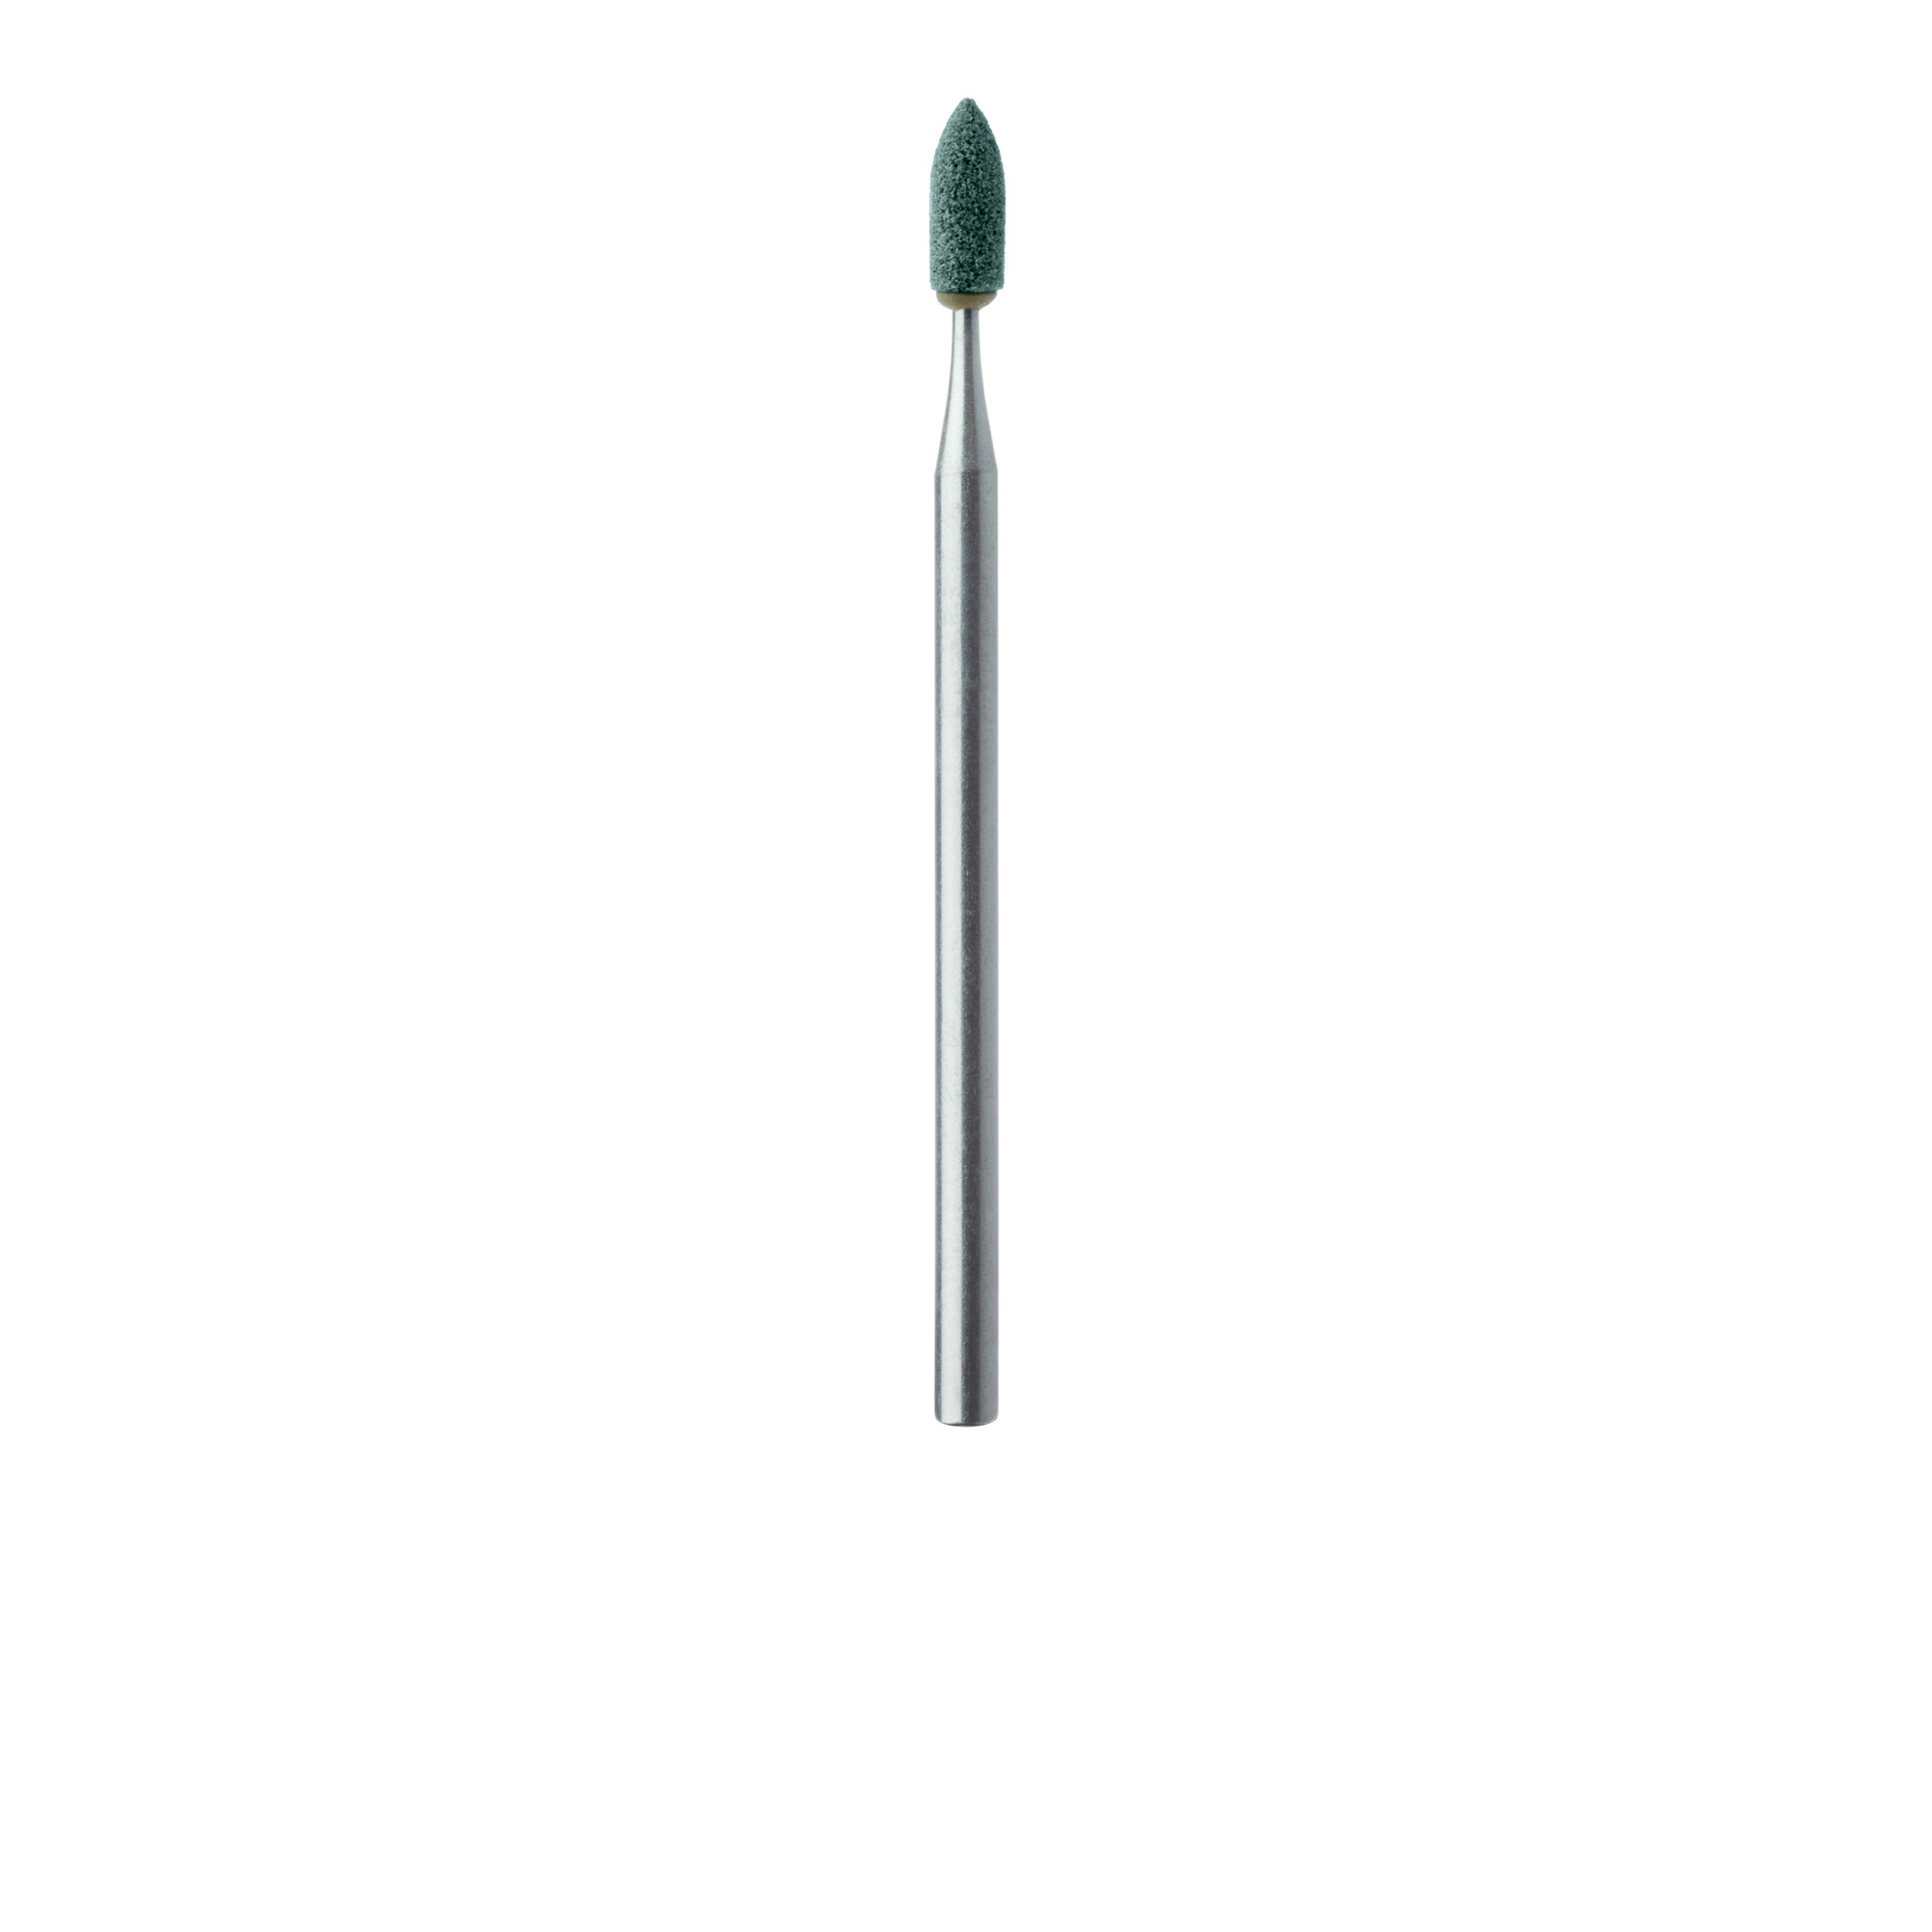 661F-025-HP-GRN Abrasive, Fine, Green, Nose Cone 2.5mm HP